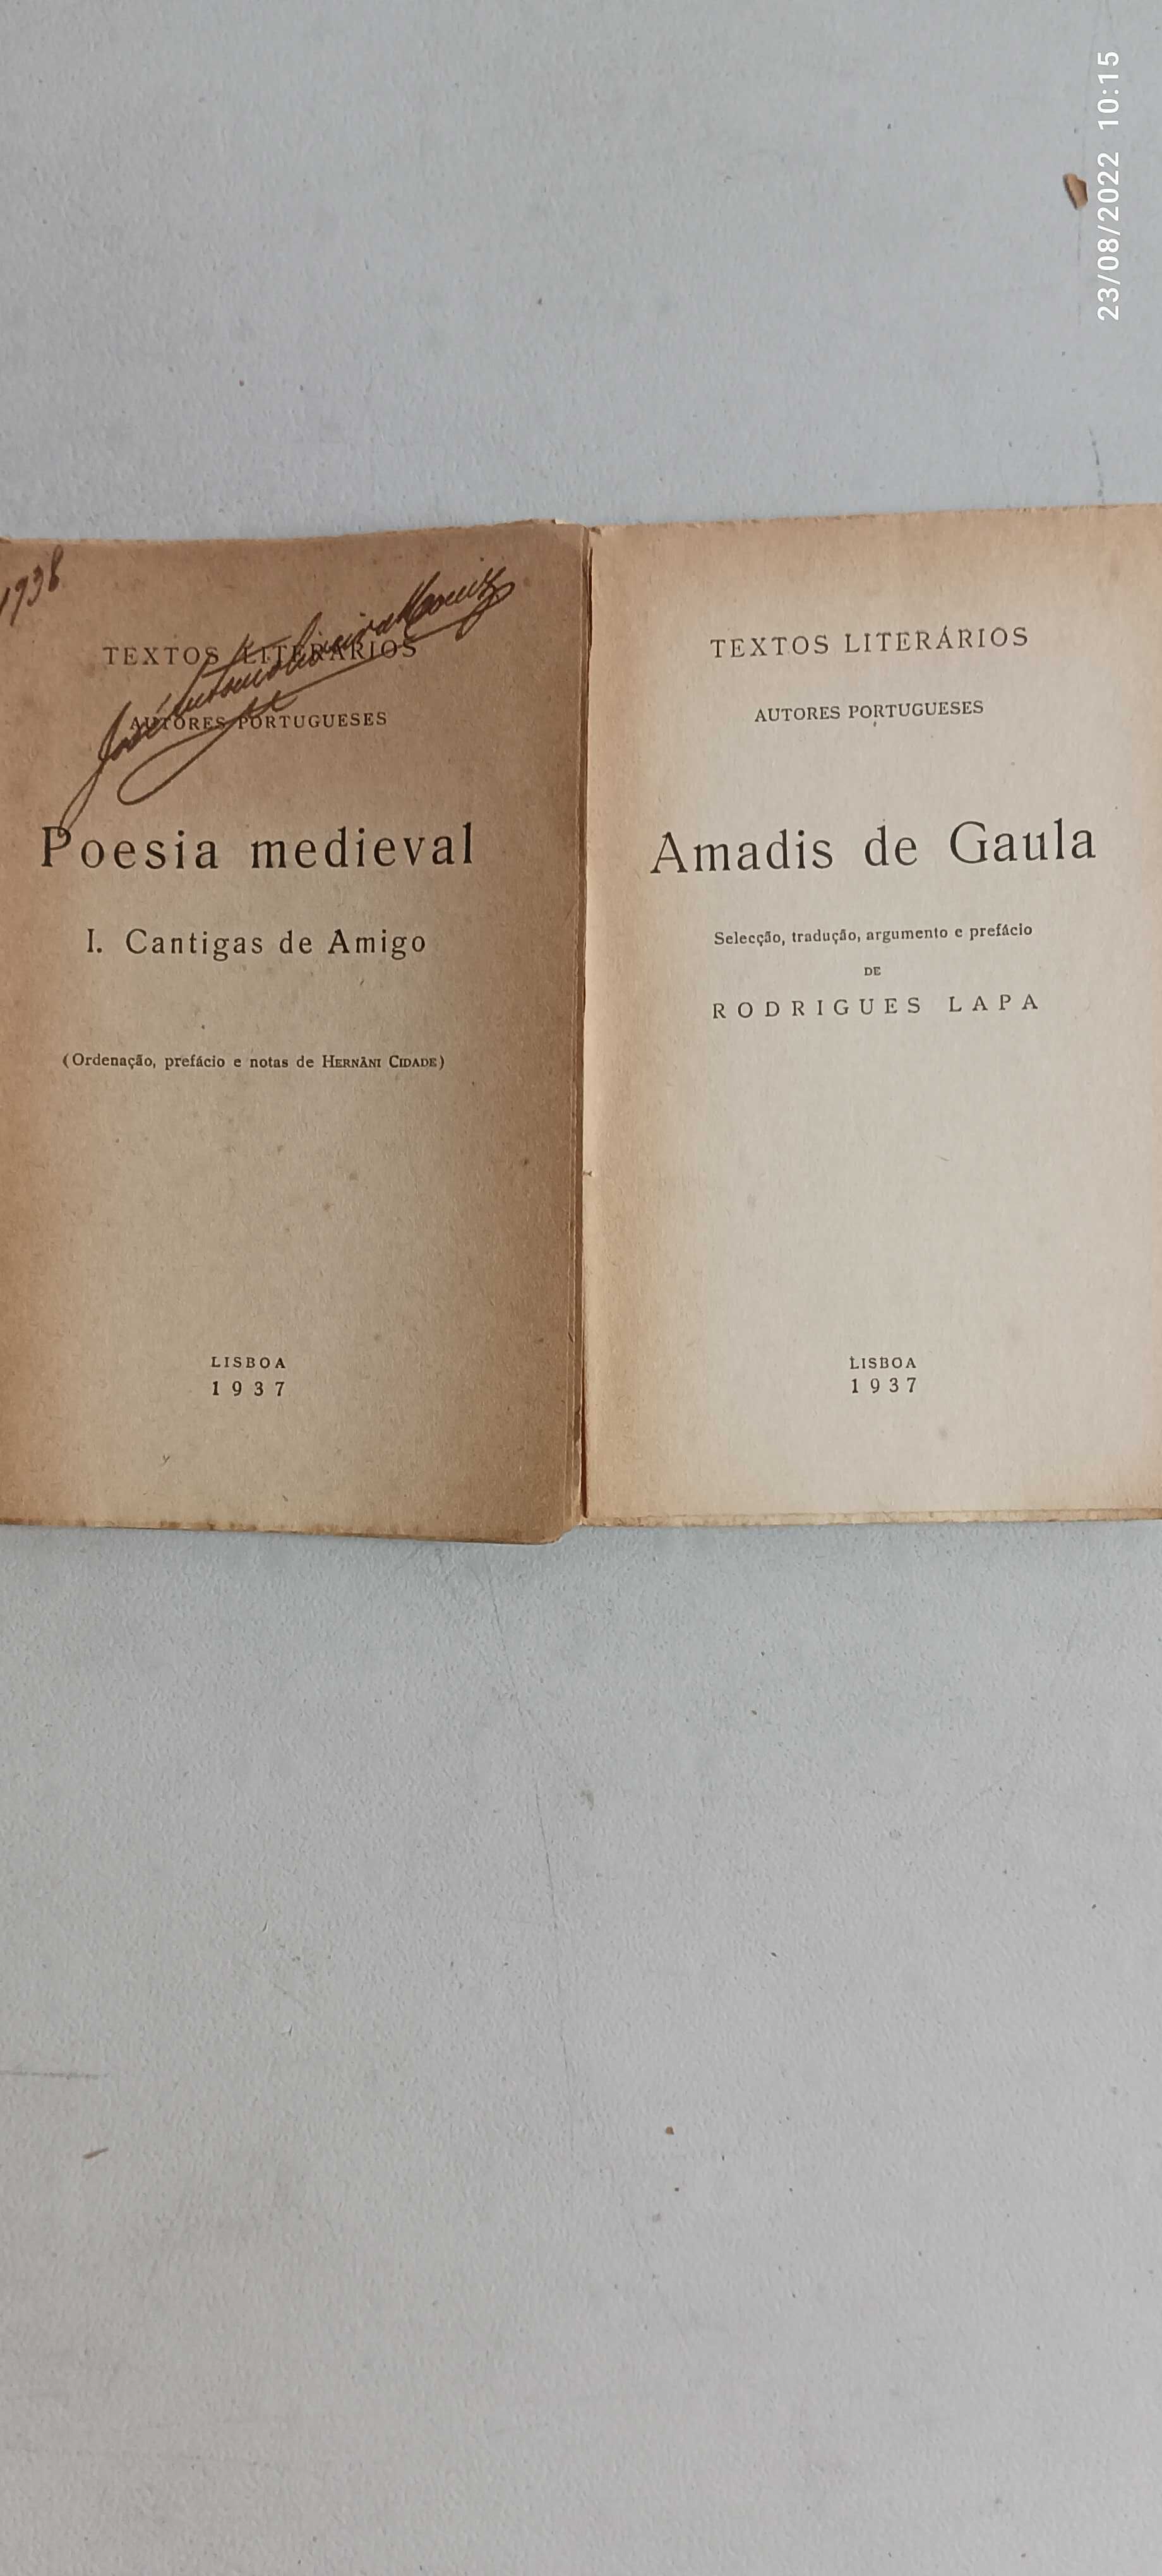 Livros Pa-3 - Autores Portugueses - Textos Literários